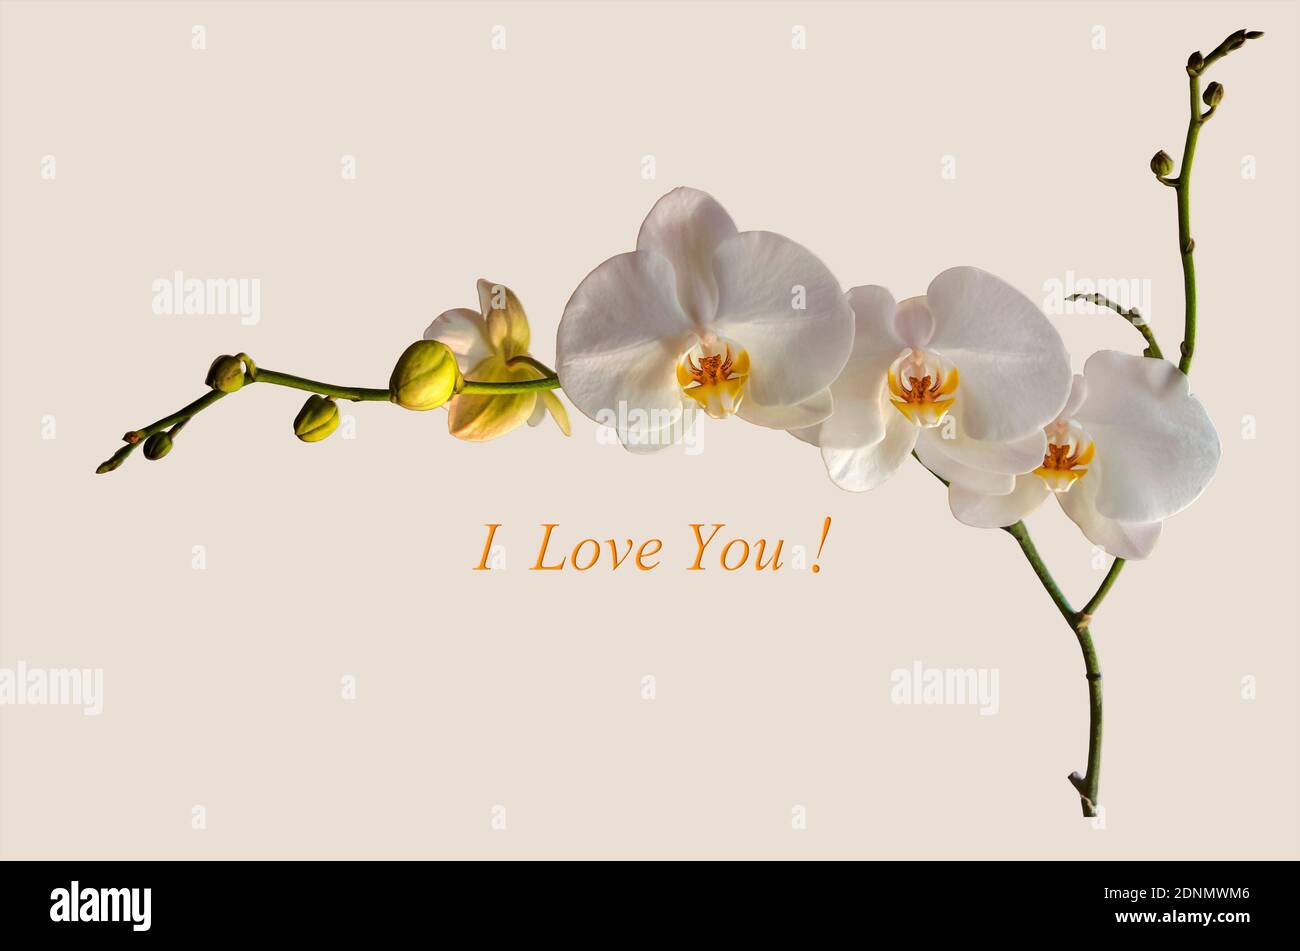 Weißer Hintergrund mit einem Zweig blühender weißer Phalaenopsis Orchidee und ungeöffneten Knospen und der Inschrift ' I love you!' Stockfoto